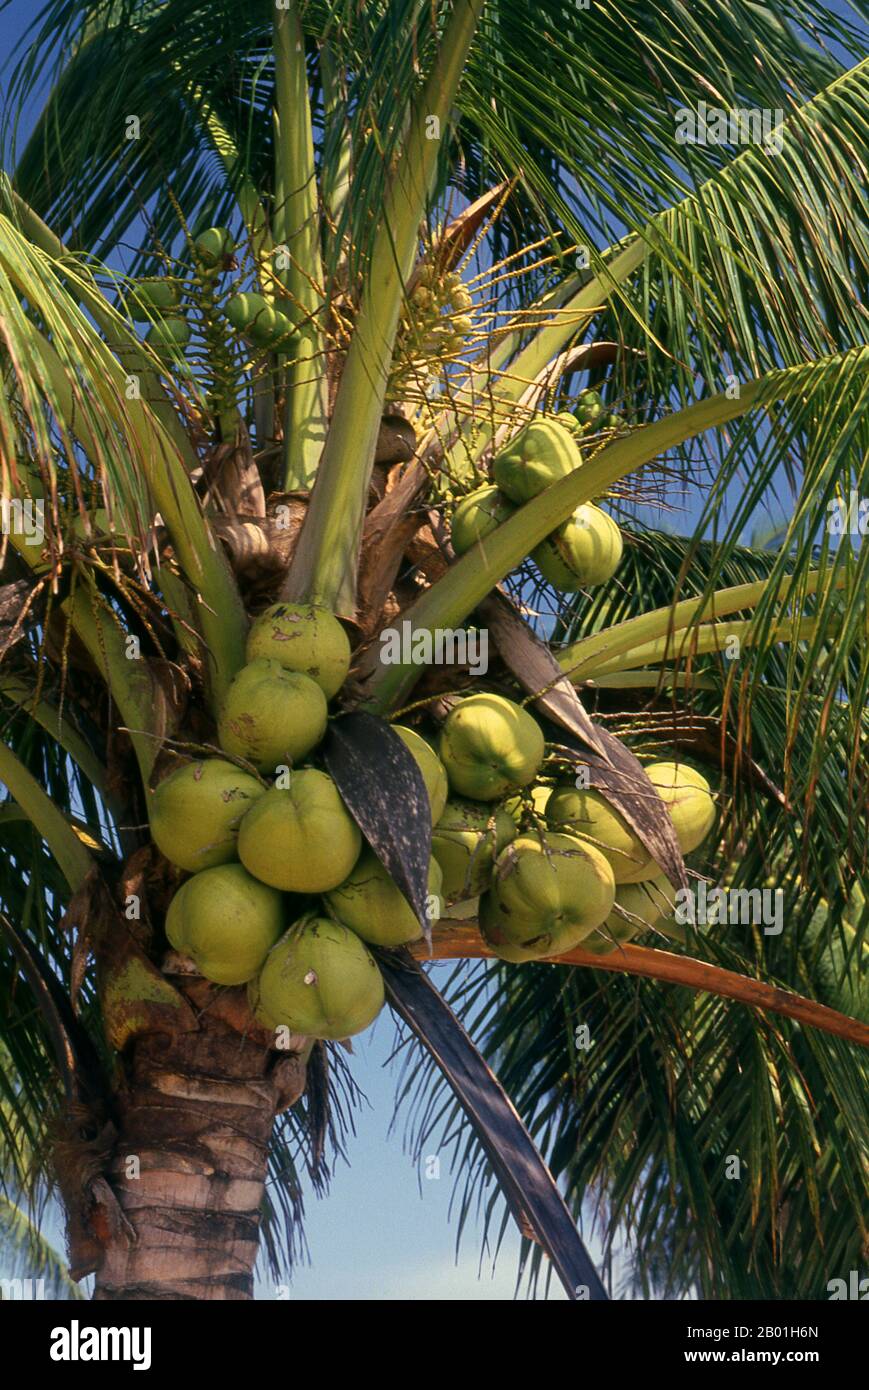 Thailandia: Noci di cocco in stagionatura, costa del Mare delle Andamane. La palma da cocco, o Cocos nucifera, è apprezzata non solo per la sua bellezza, ma anche come un redditizio raccolto di denaro. Coltivato in tutti i mari del sud e nelle regioni dell'Oceano Indiano, fornisce cibo, bevande, riparo, trasporto, carburante, medicine e persino vestiti per milioni di persone. La palma da cocco vive per circa 60 anni e produce circa 70-80 noci all'anno. Gli alberi sono talvolta alti 40-50 metri (130-160 piedi). Foto Stock